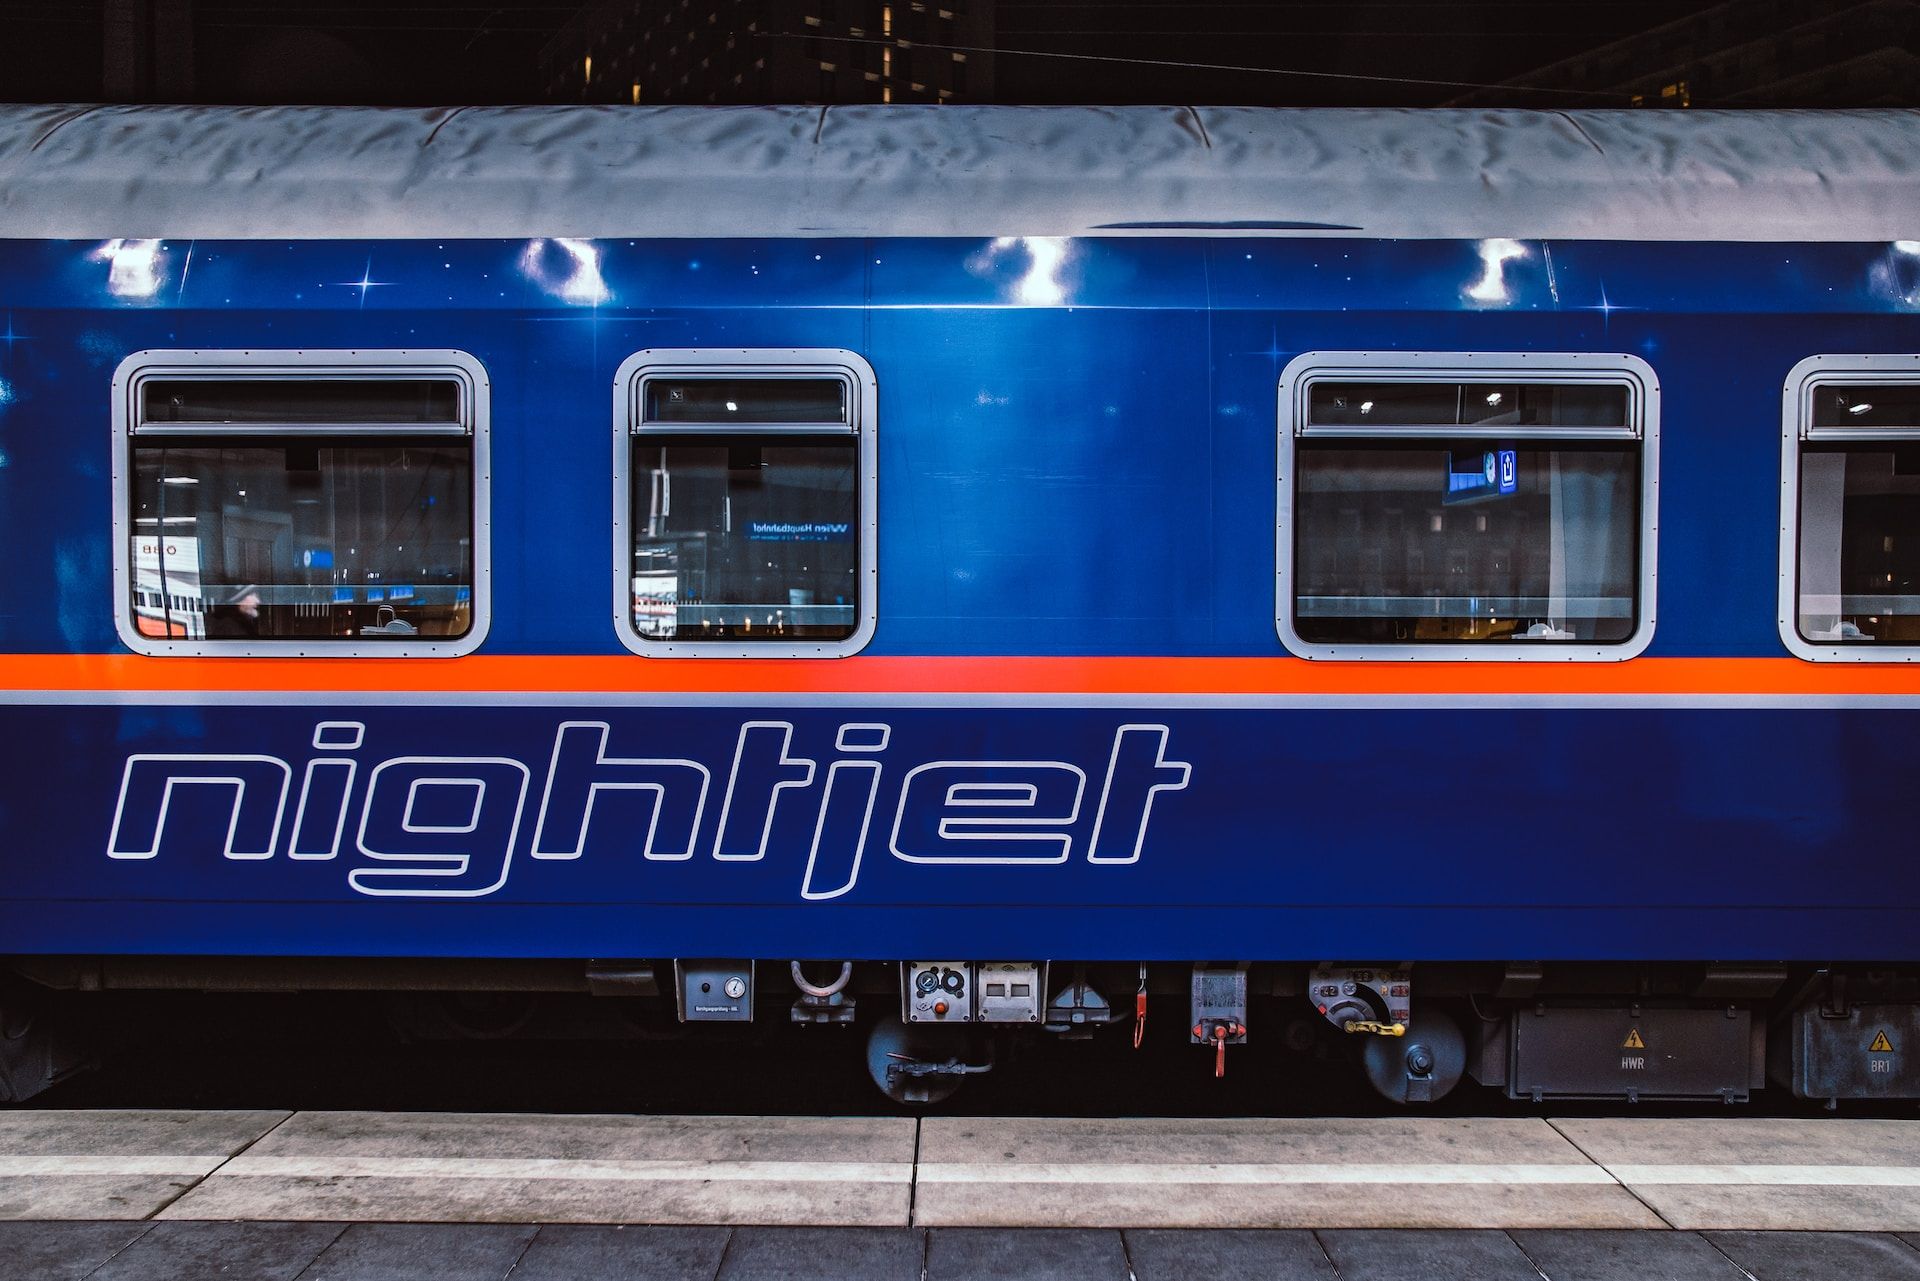 O trem Nightjet pronto para viajar por toda a Europa.